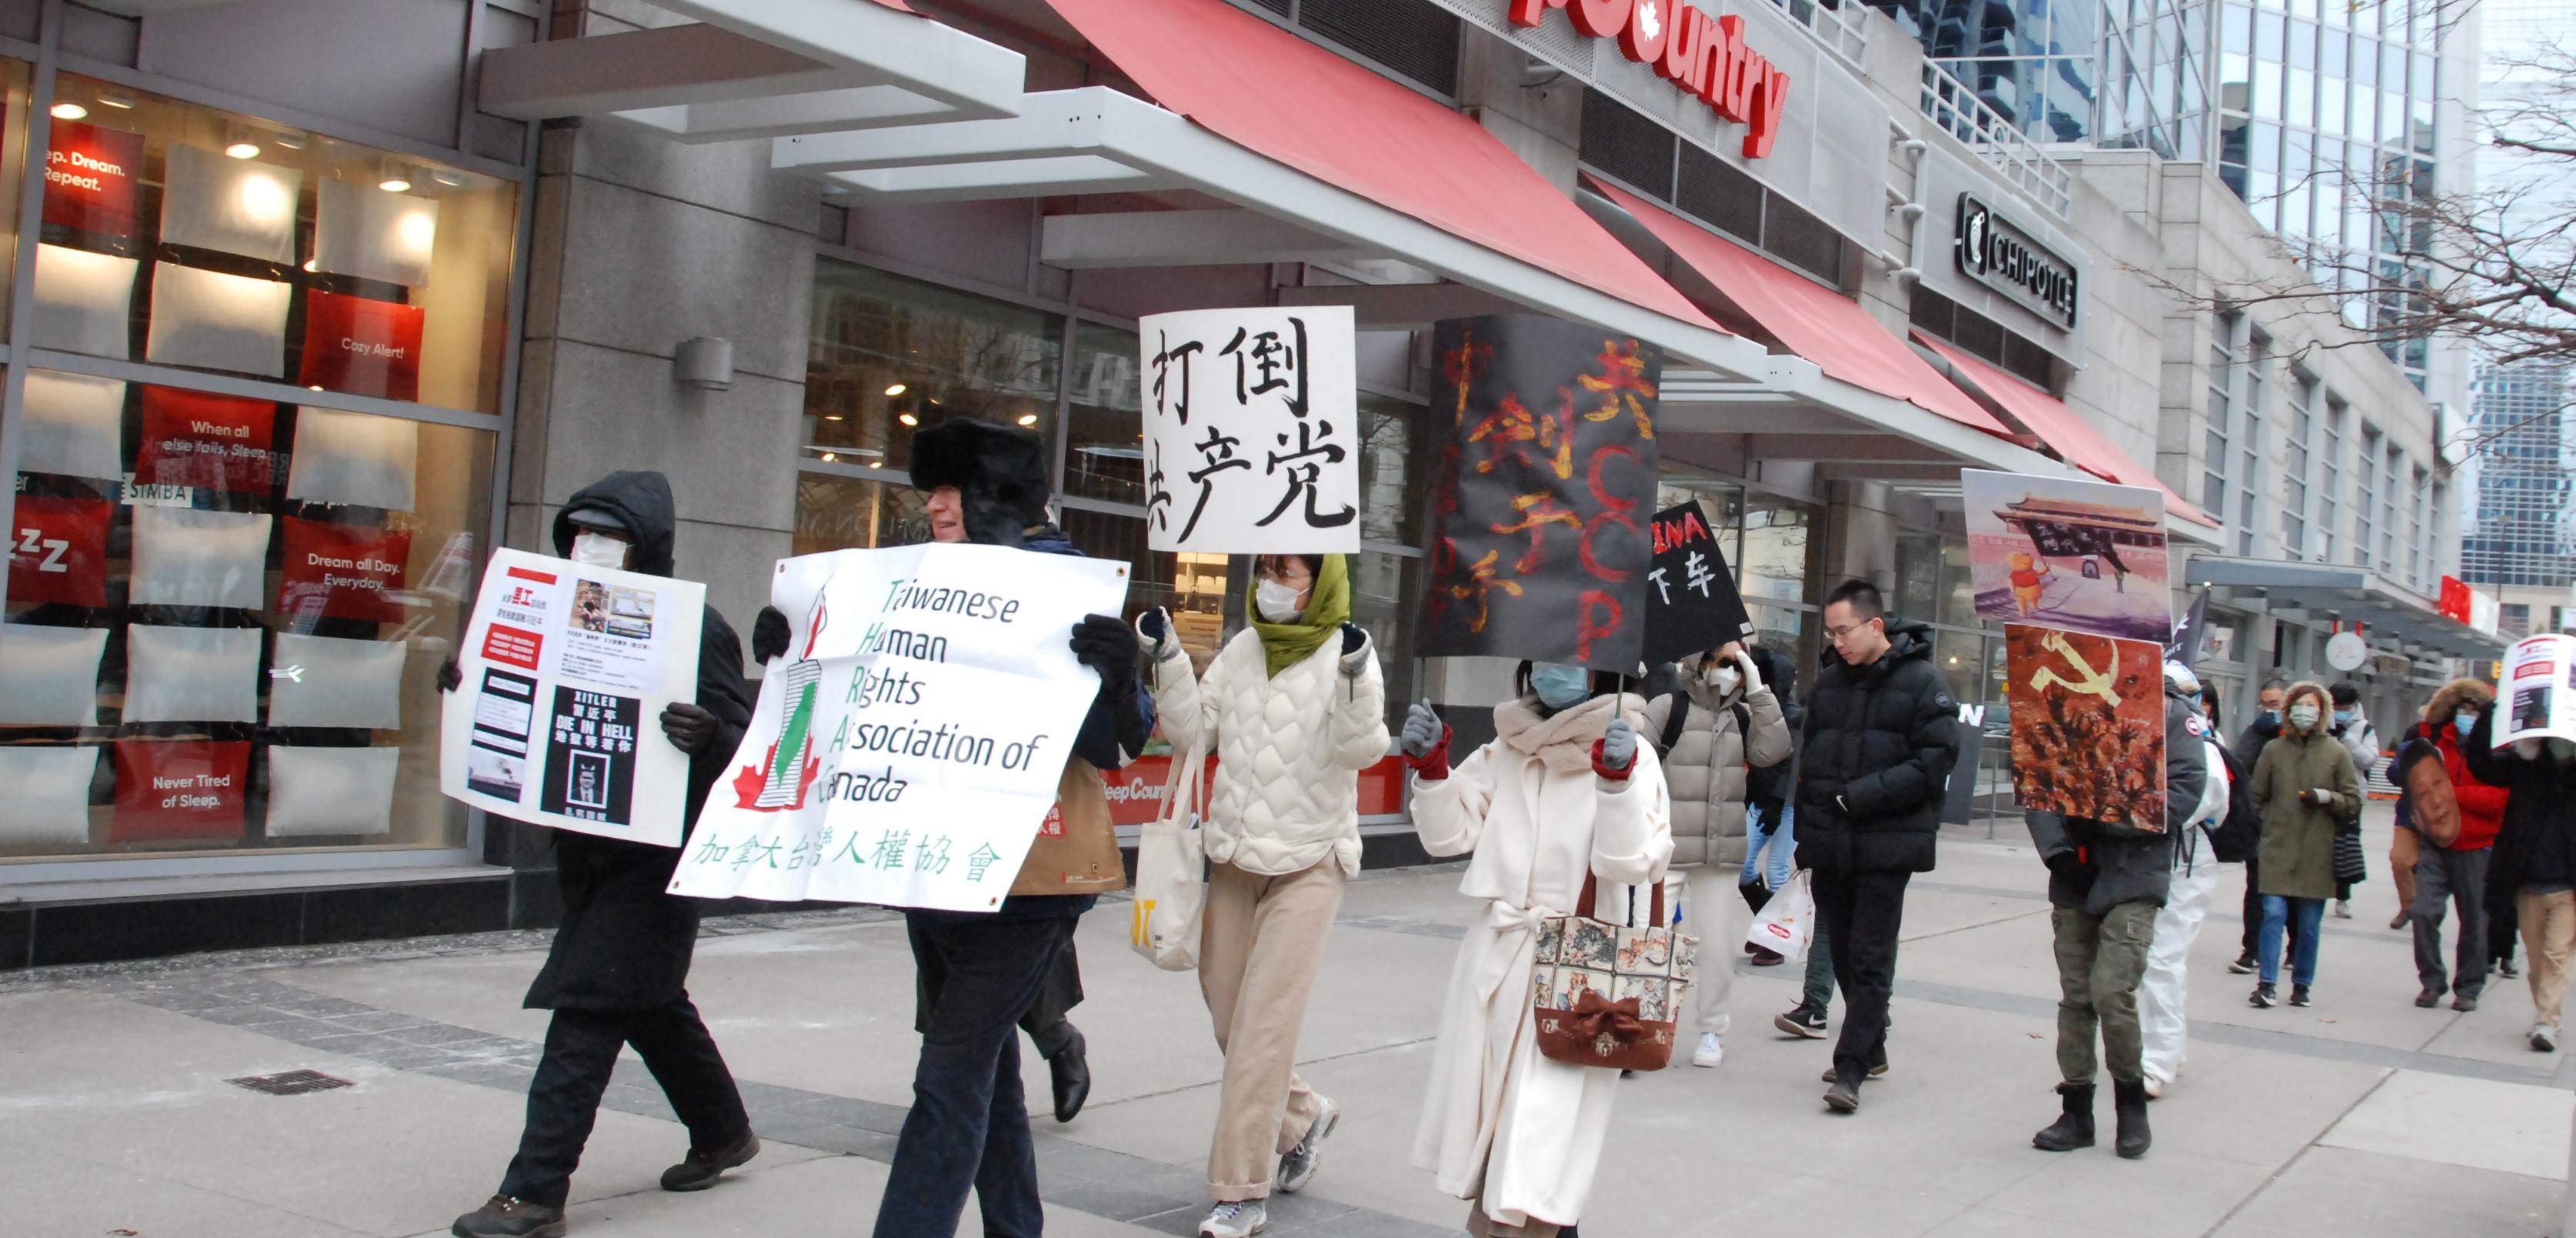 [新聞] 中國留學生加拿大遊行 高喊「打倒共產黨」